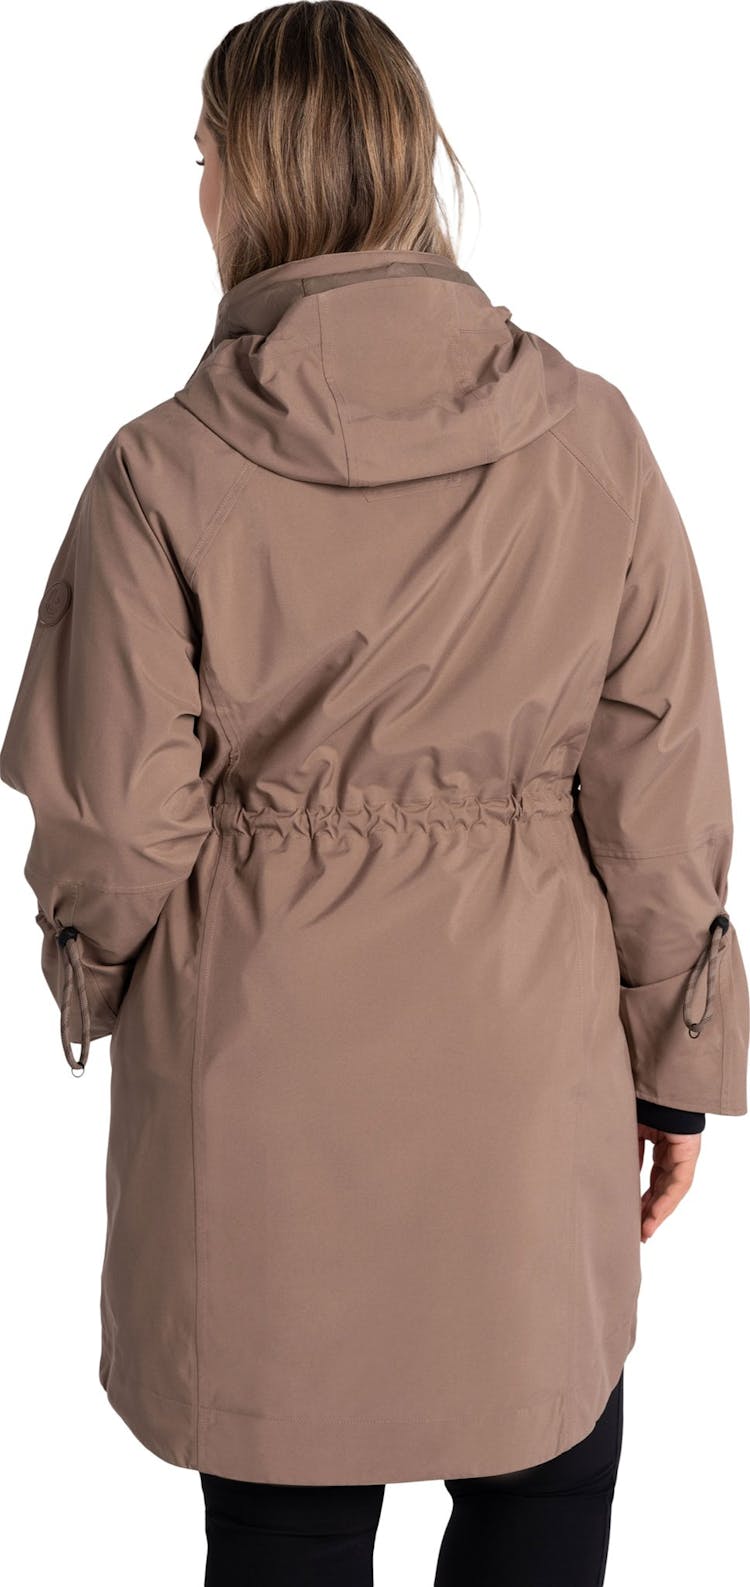 Numéro de l'image de la galerie de produits 2 pour le produit Manteau de pluie Piper - Femme